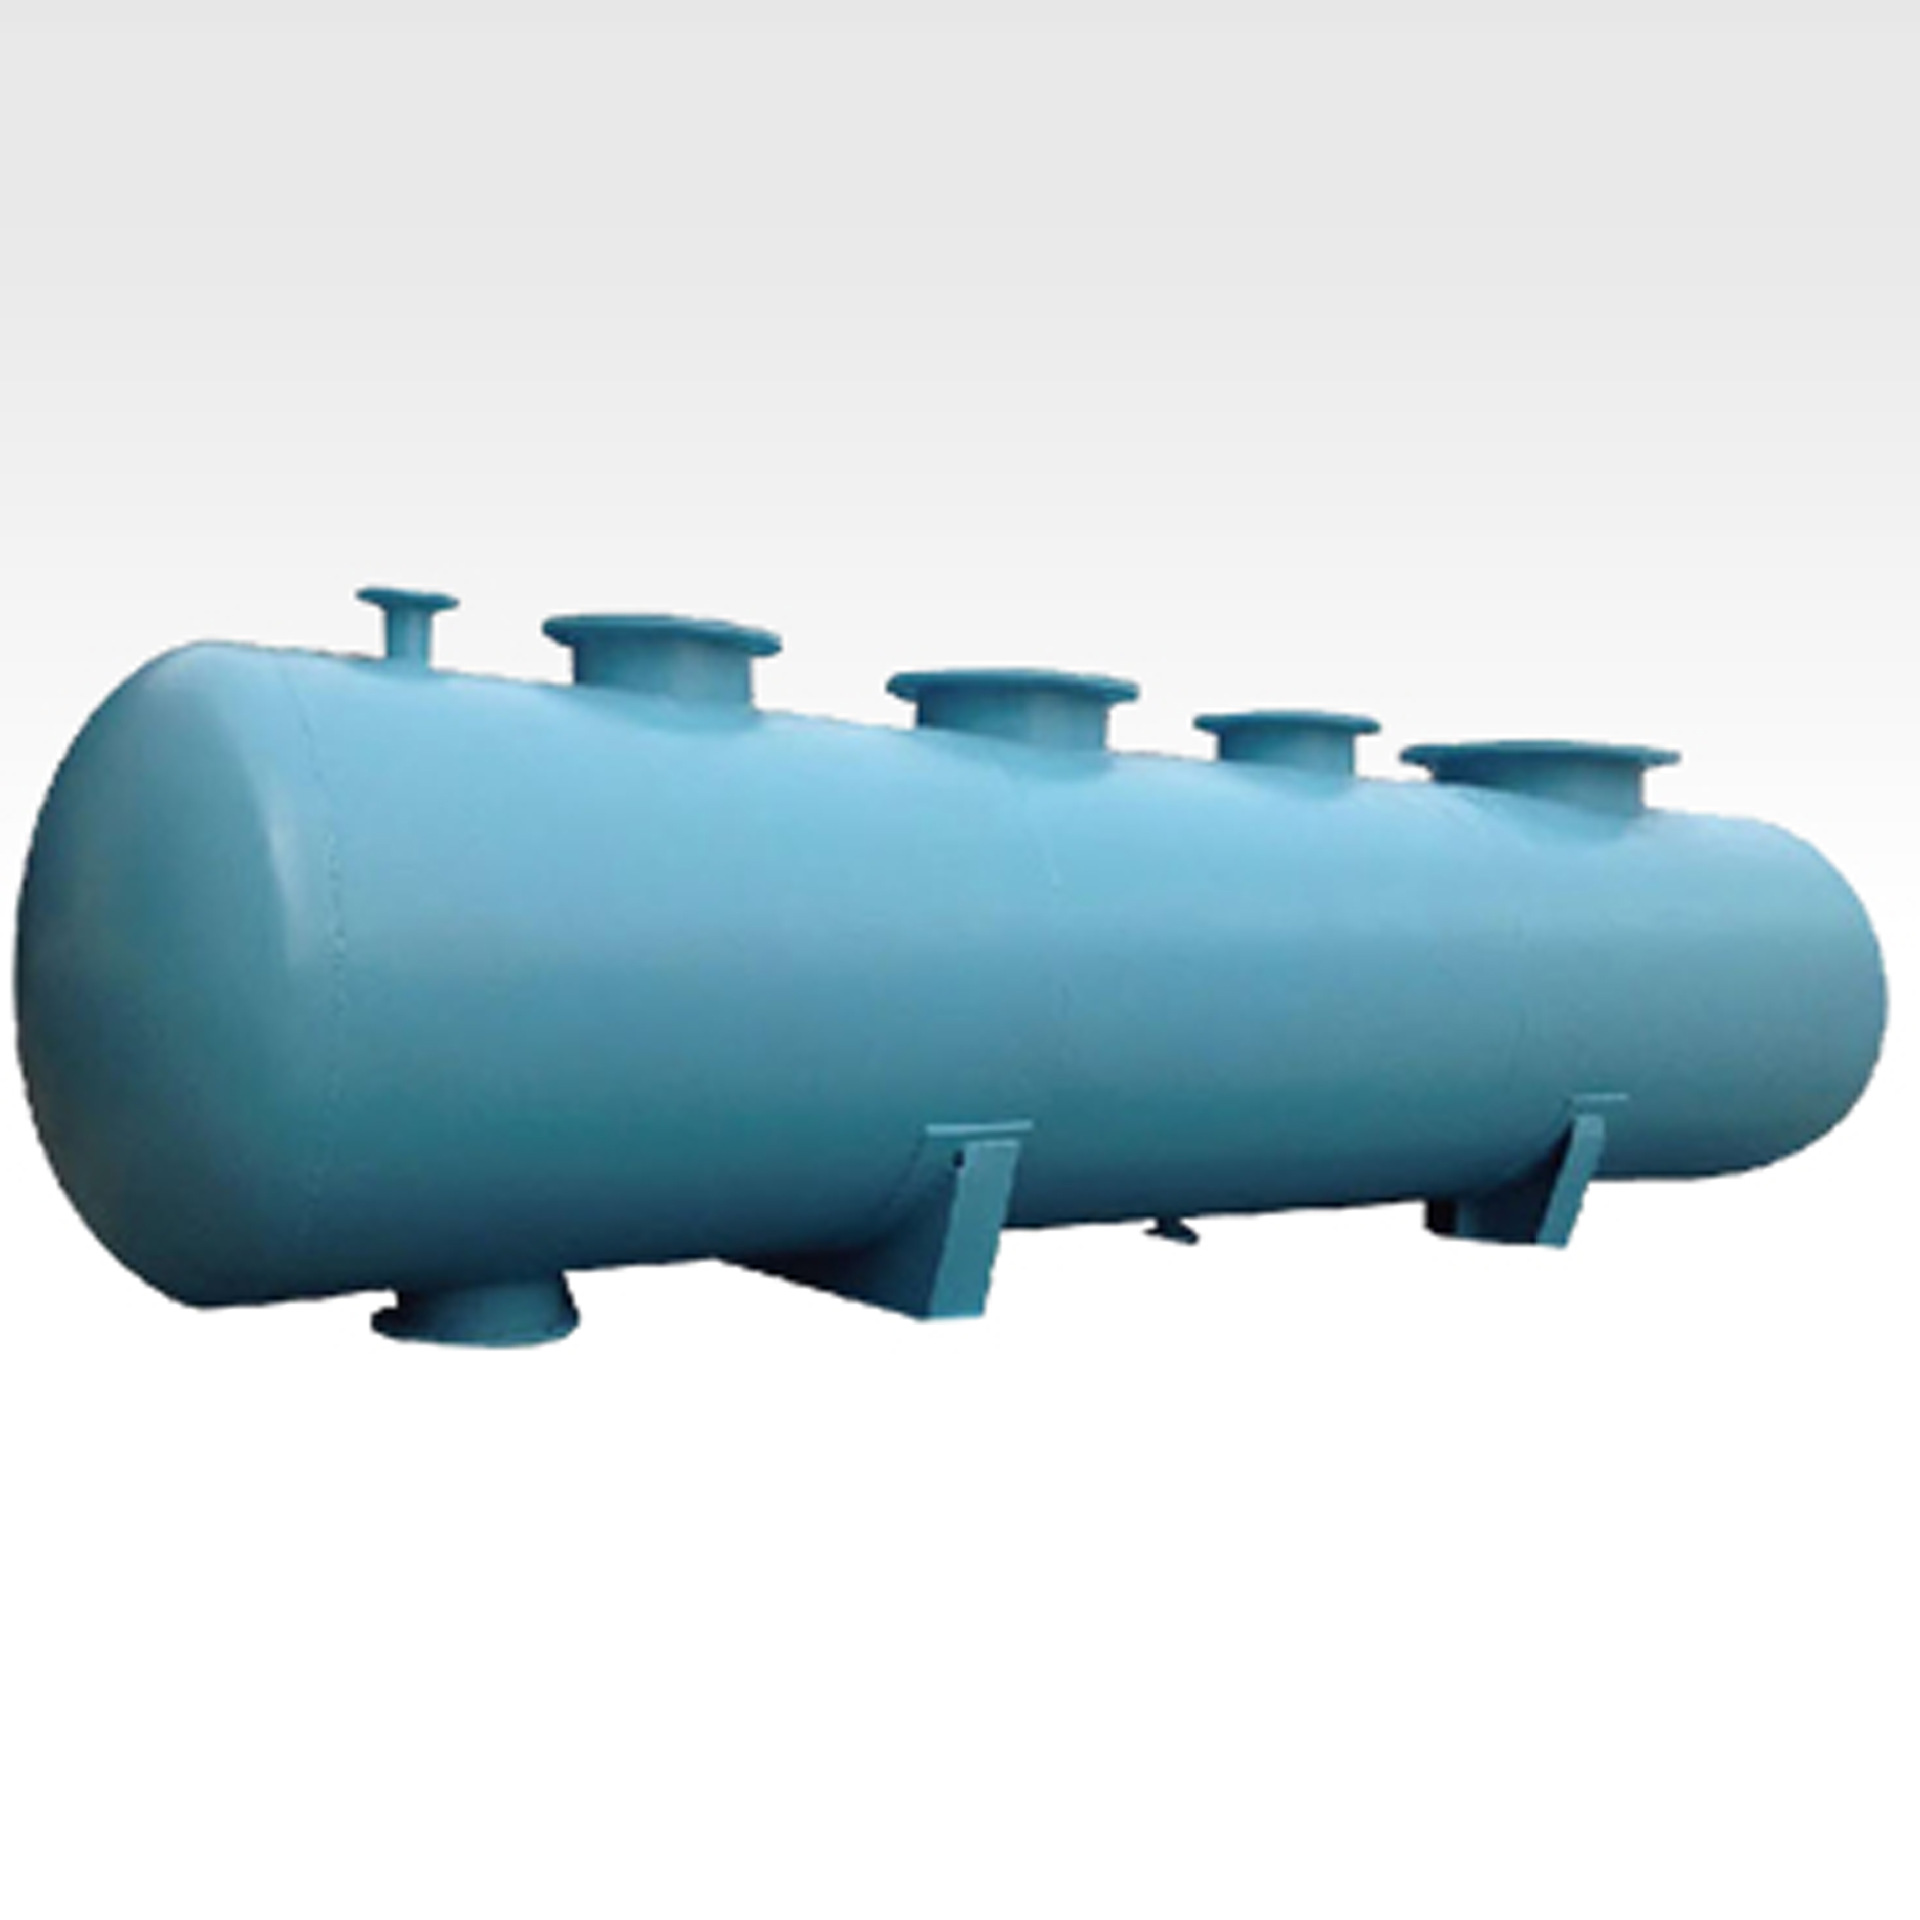 分集水器 分气缸 蒸汽锅炉配件分集水器 中央空调集水器 分水器